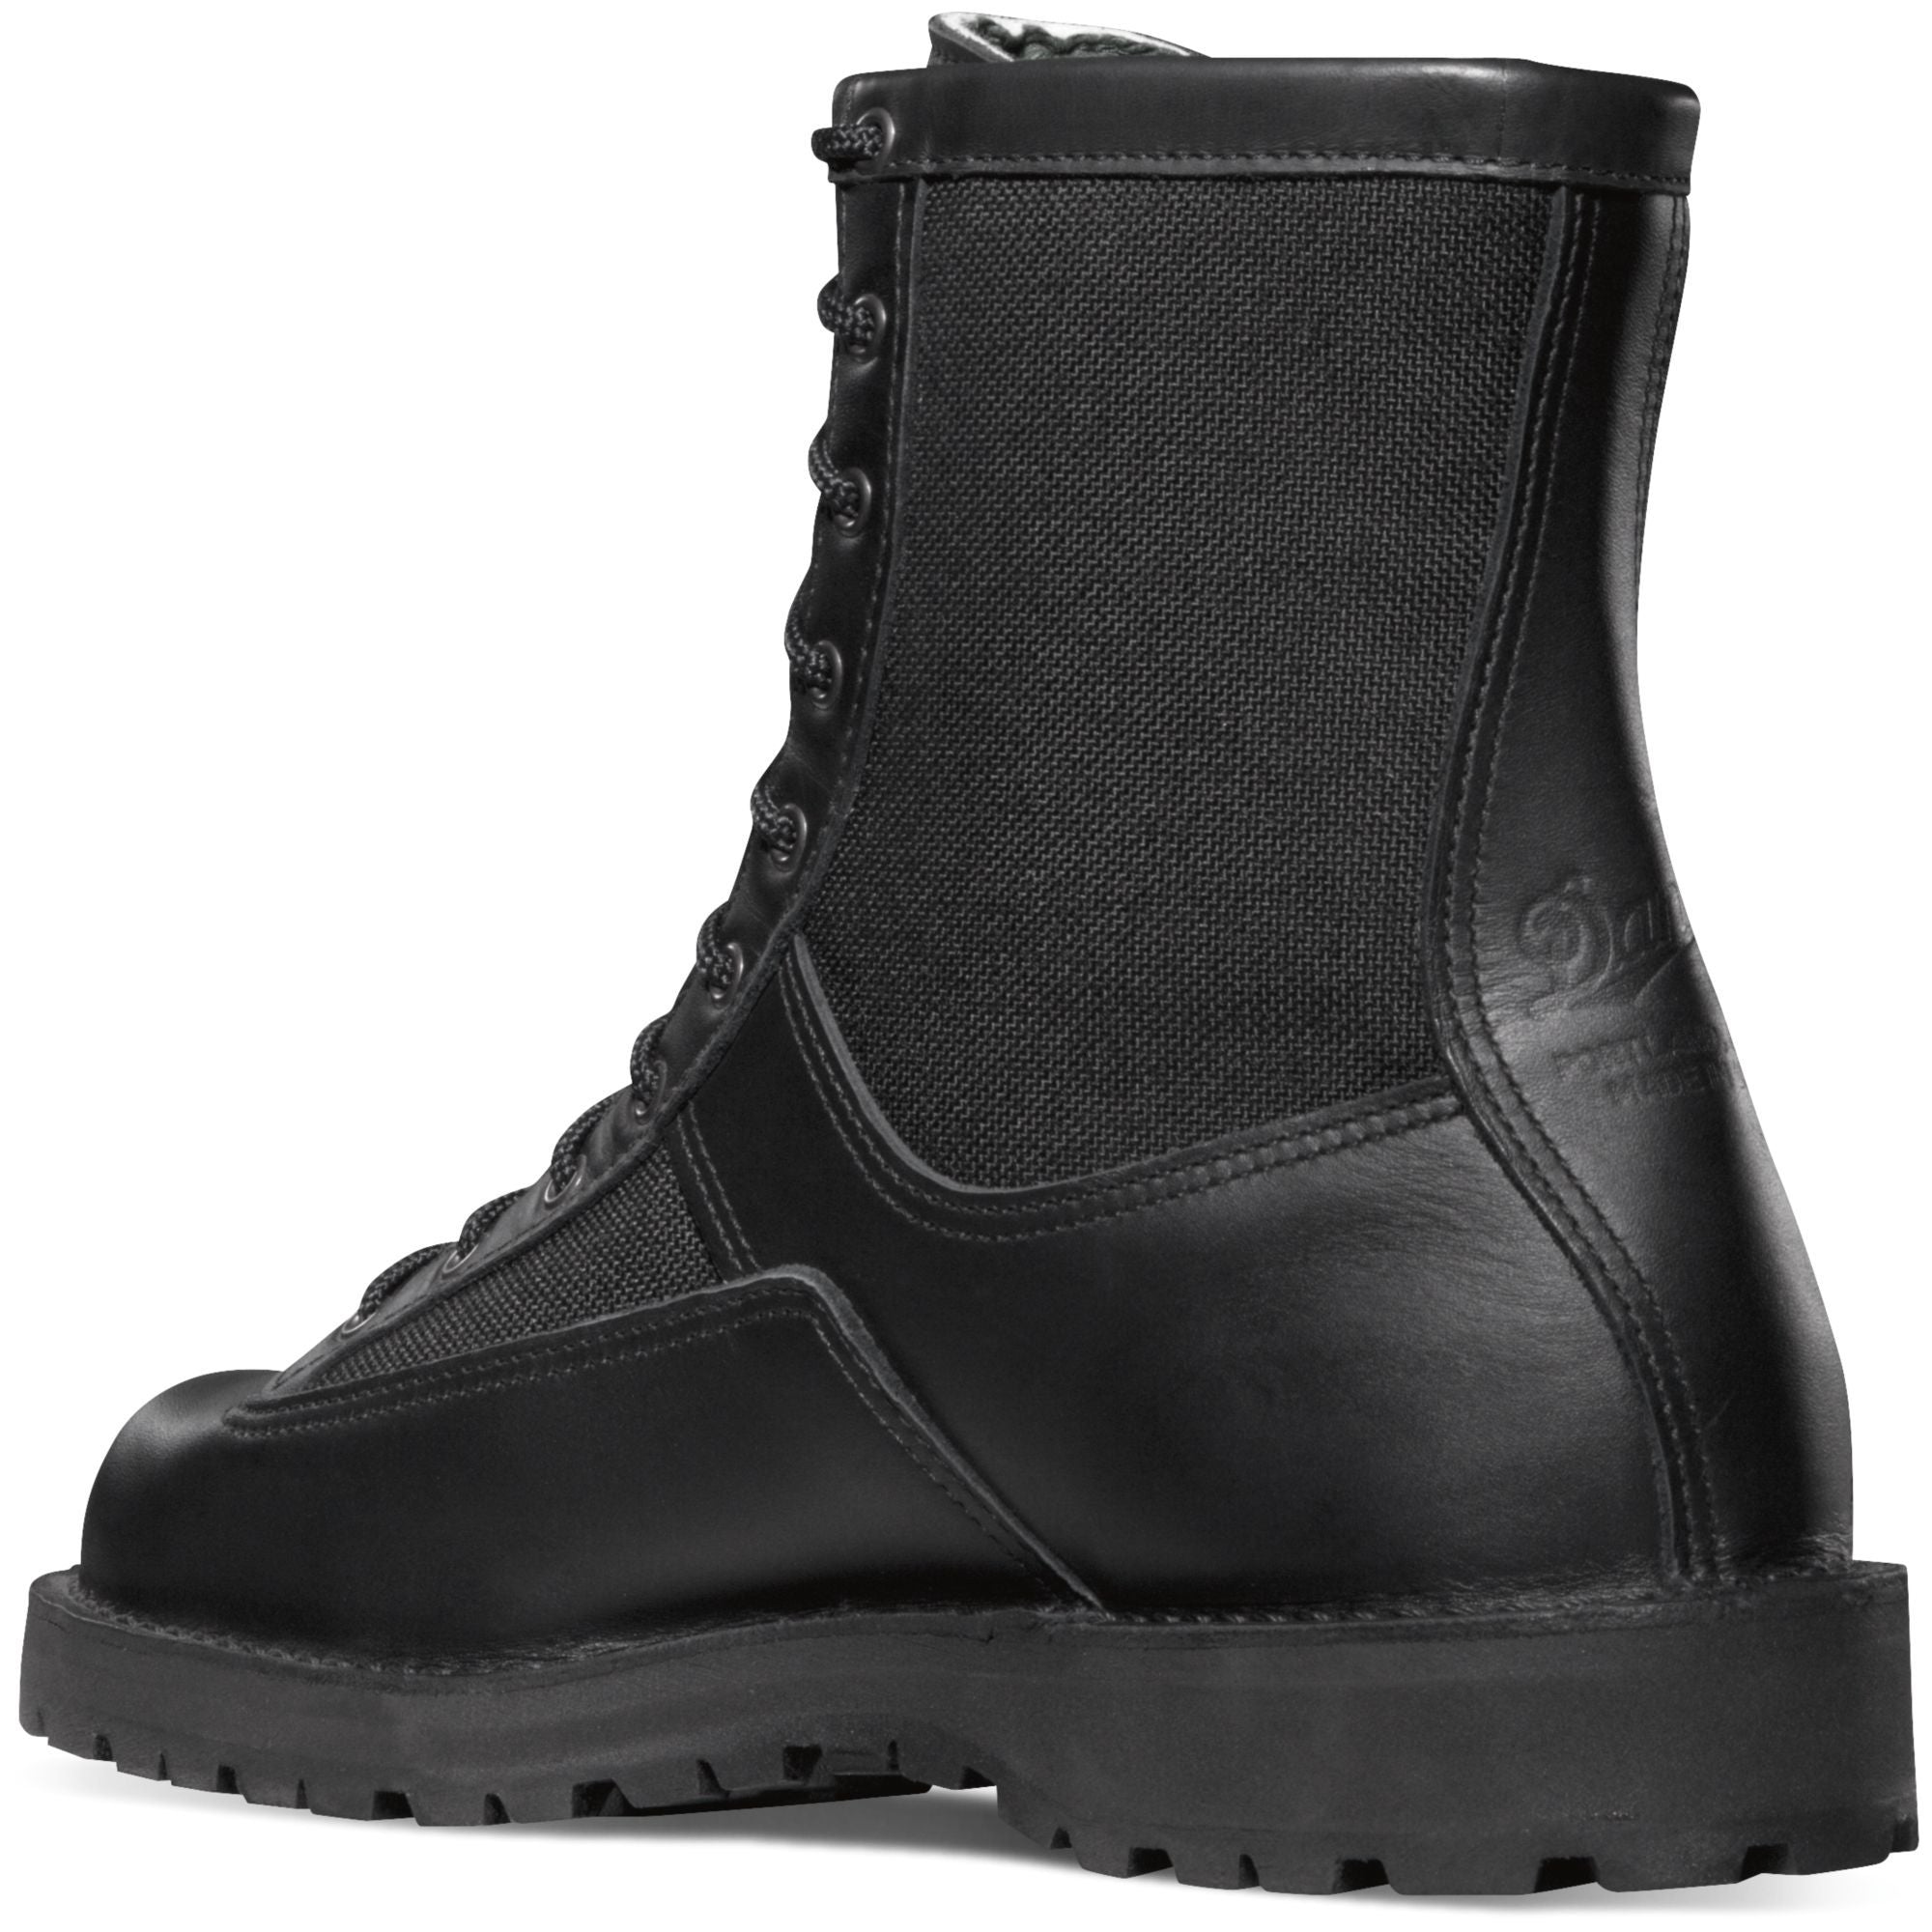 Danner Men's Acadia USA Made 8" Waterproof Duty Boot - Black - 21210  - Overlook Boots